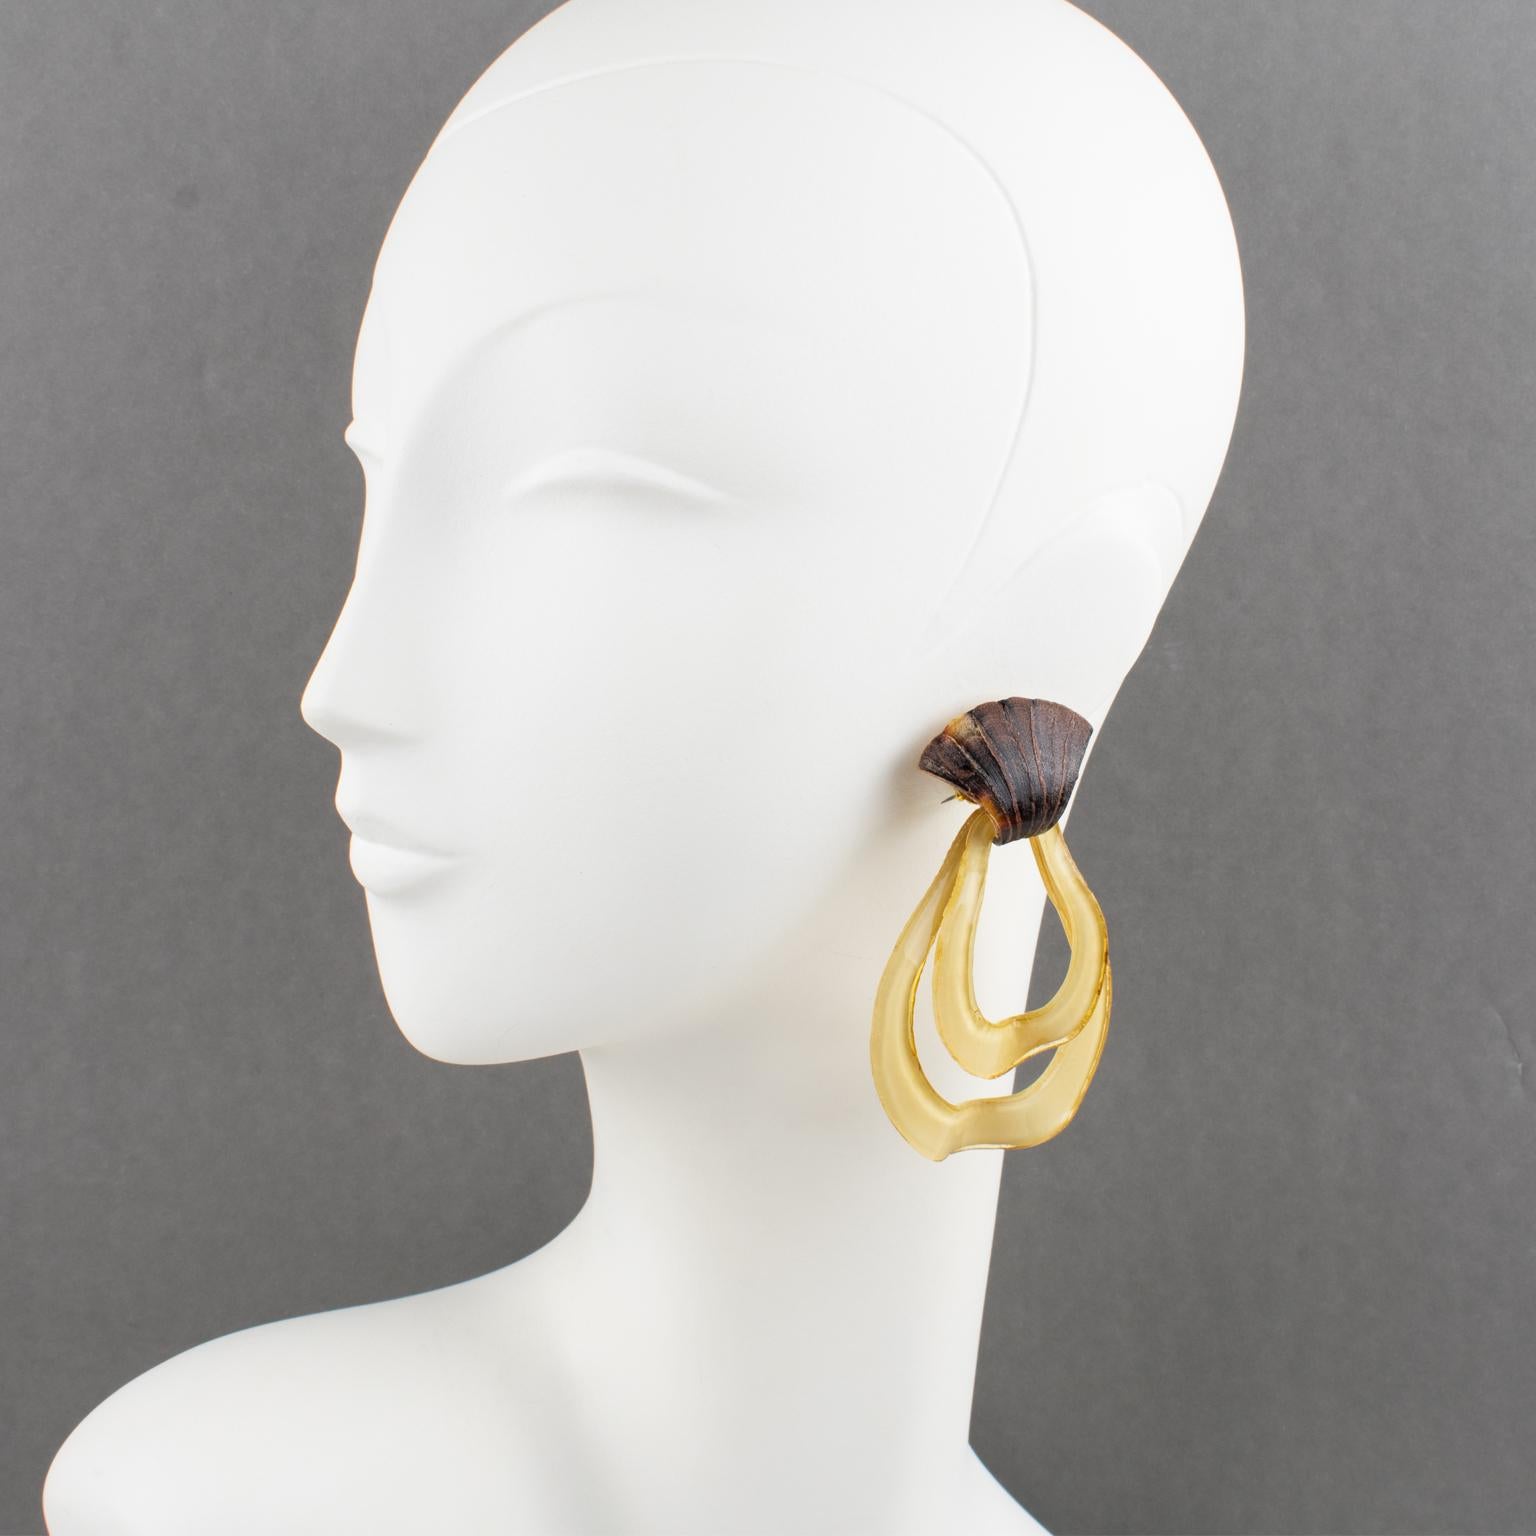 Cilea Paris hat für die französische Designerin Francoise Montague diese niedlichen Ohrringe zum Anstecken entworfen. Die Stücke haben eine massive, baumelnde Form aus beigefarbenem Harz in abgestuften birnenförmigen Tropfen mit schildpattfarbenen